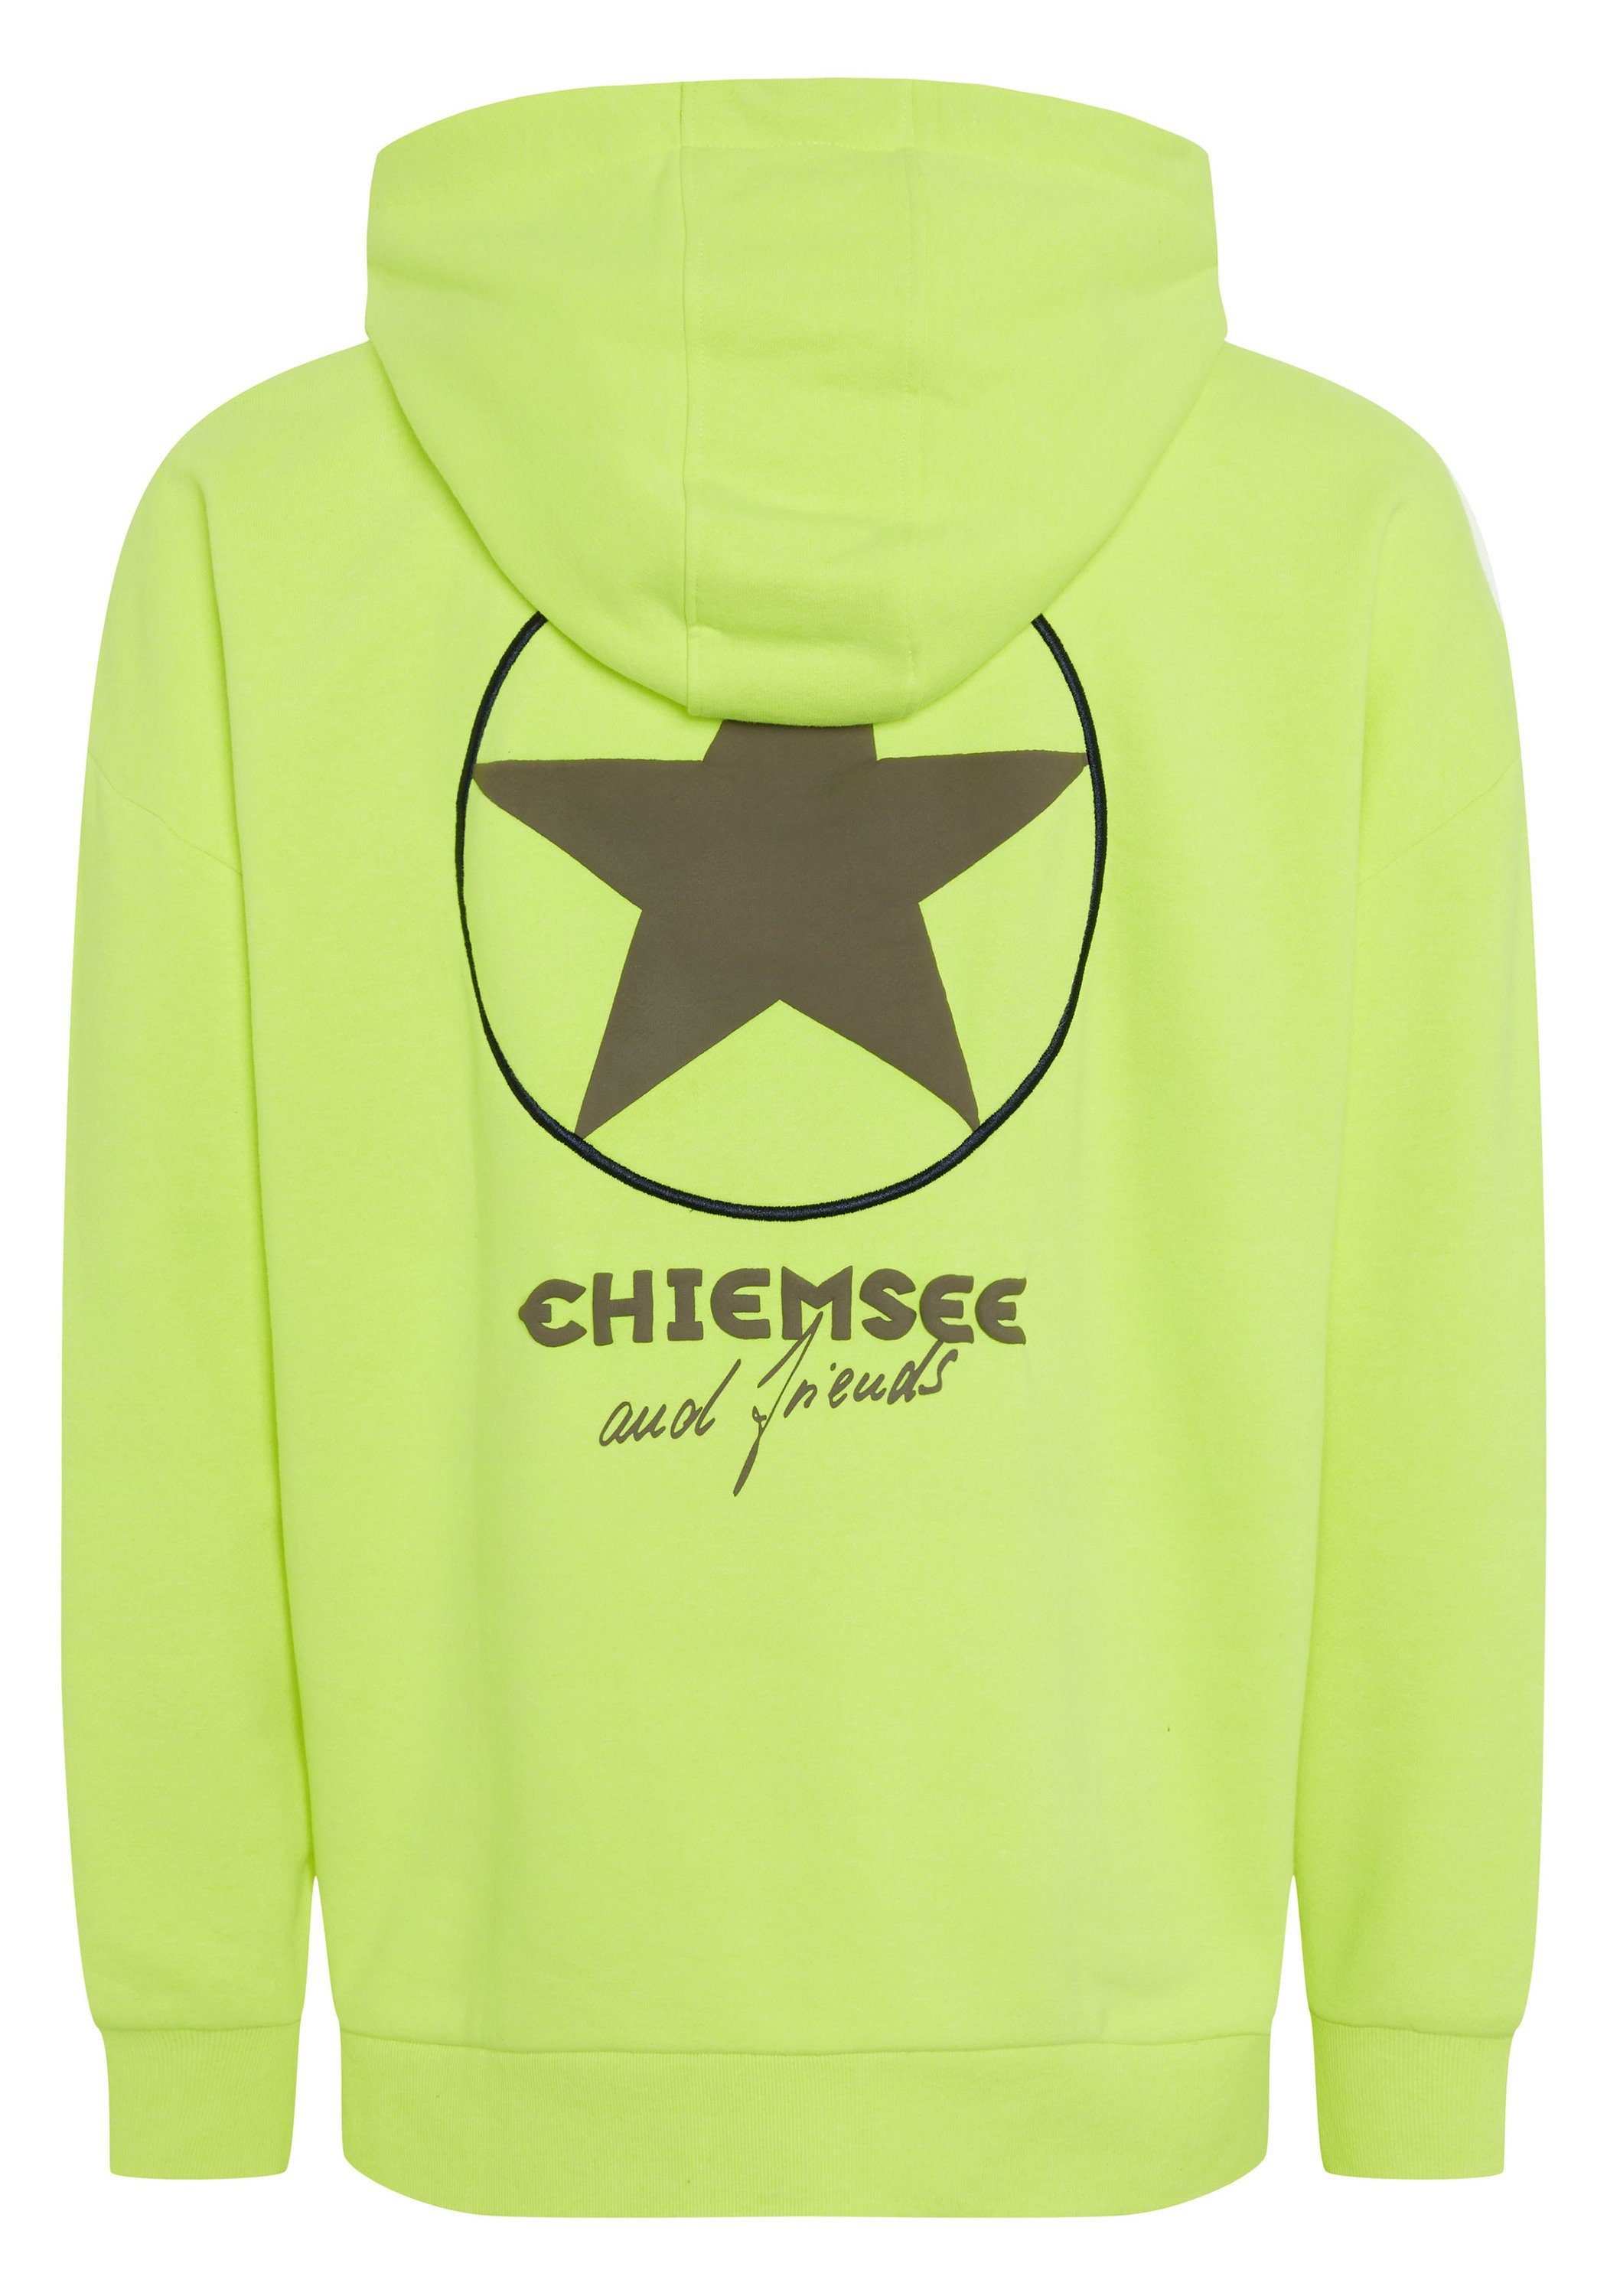 Print Stitching Yellow mit 1 Hoodie Safety Kapuzensweatshirt 13-0630 Chiemsee und